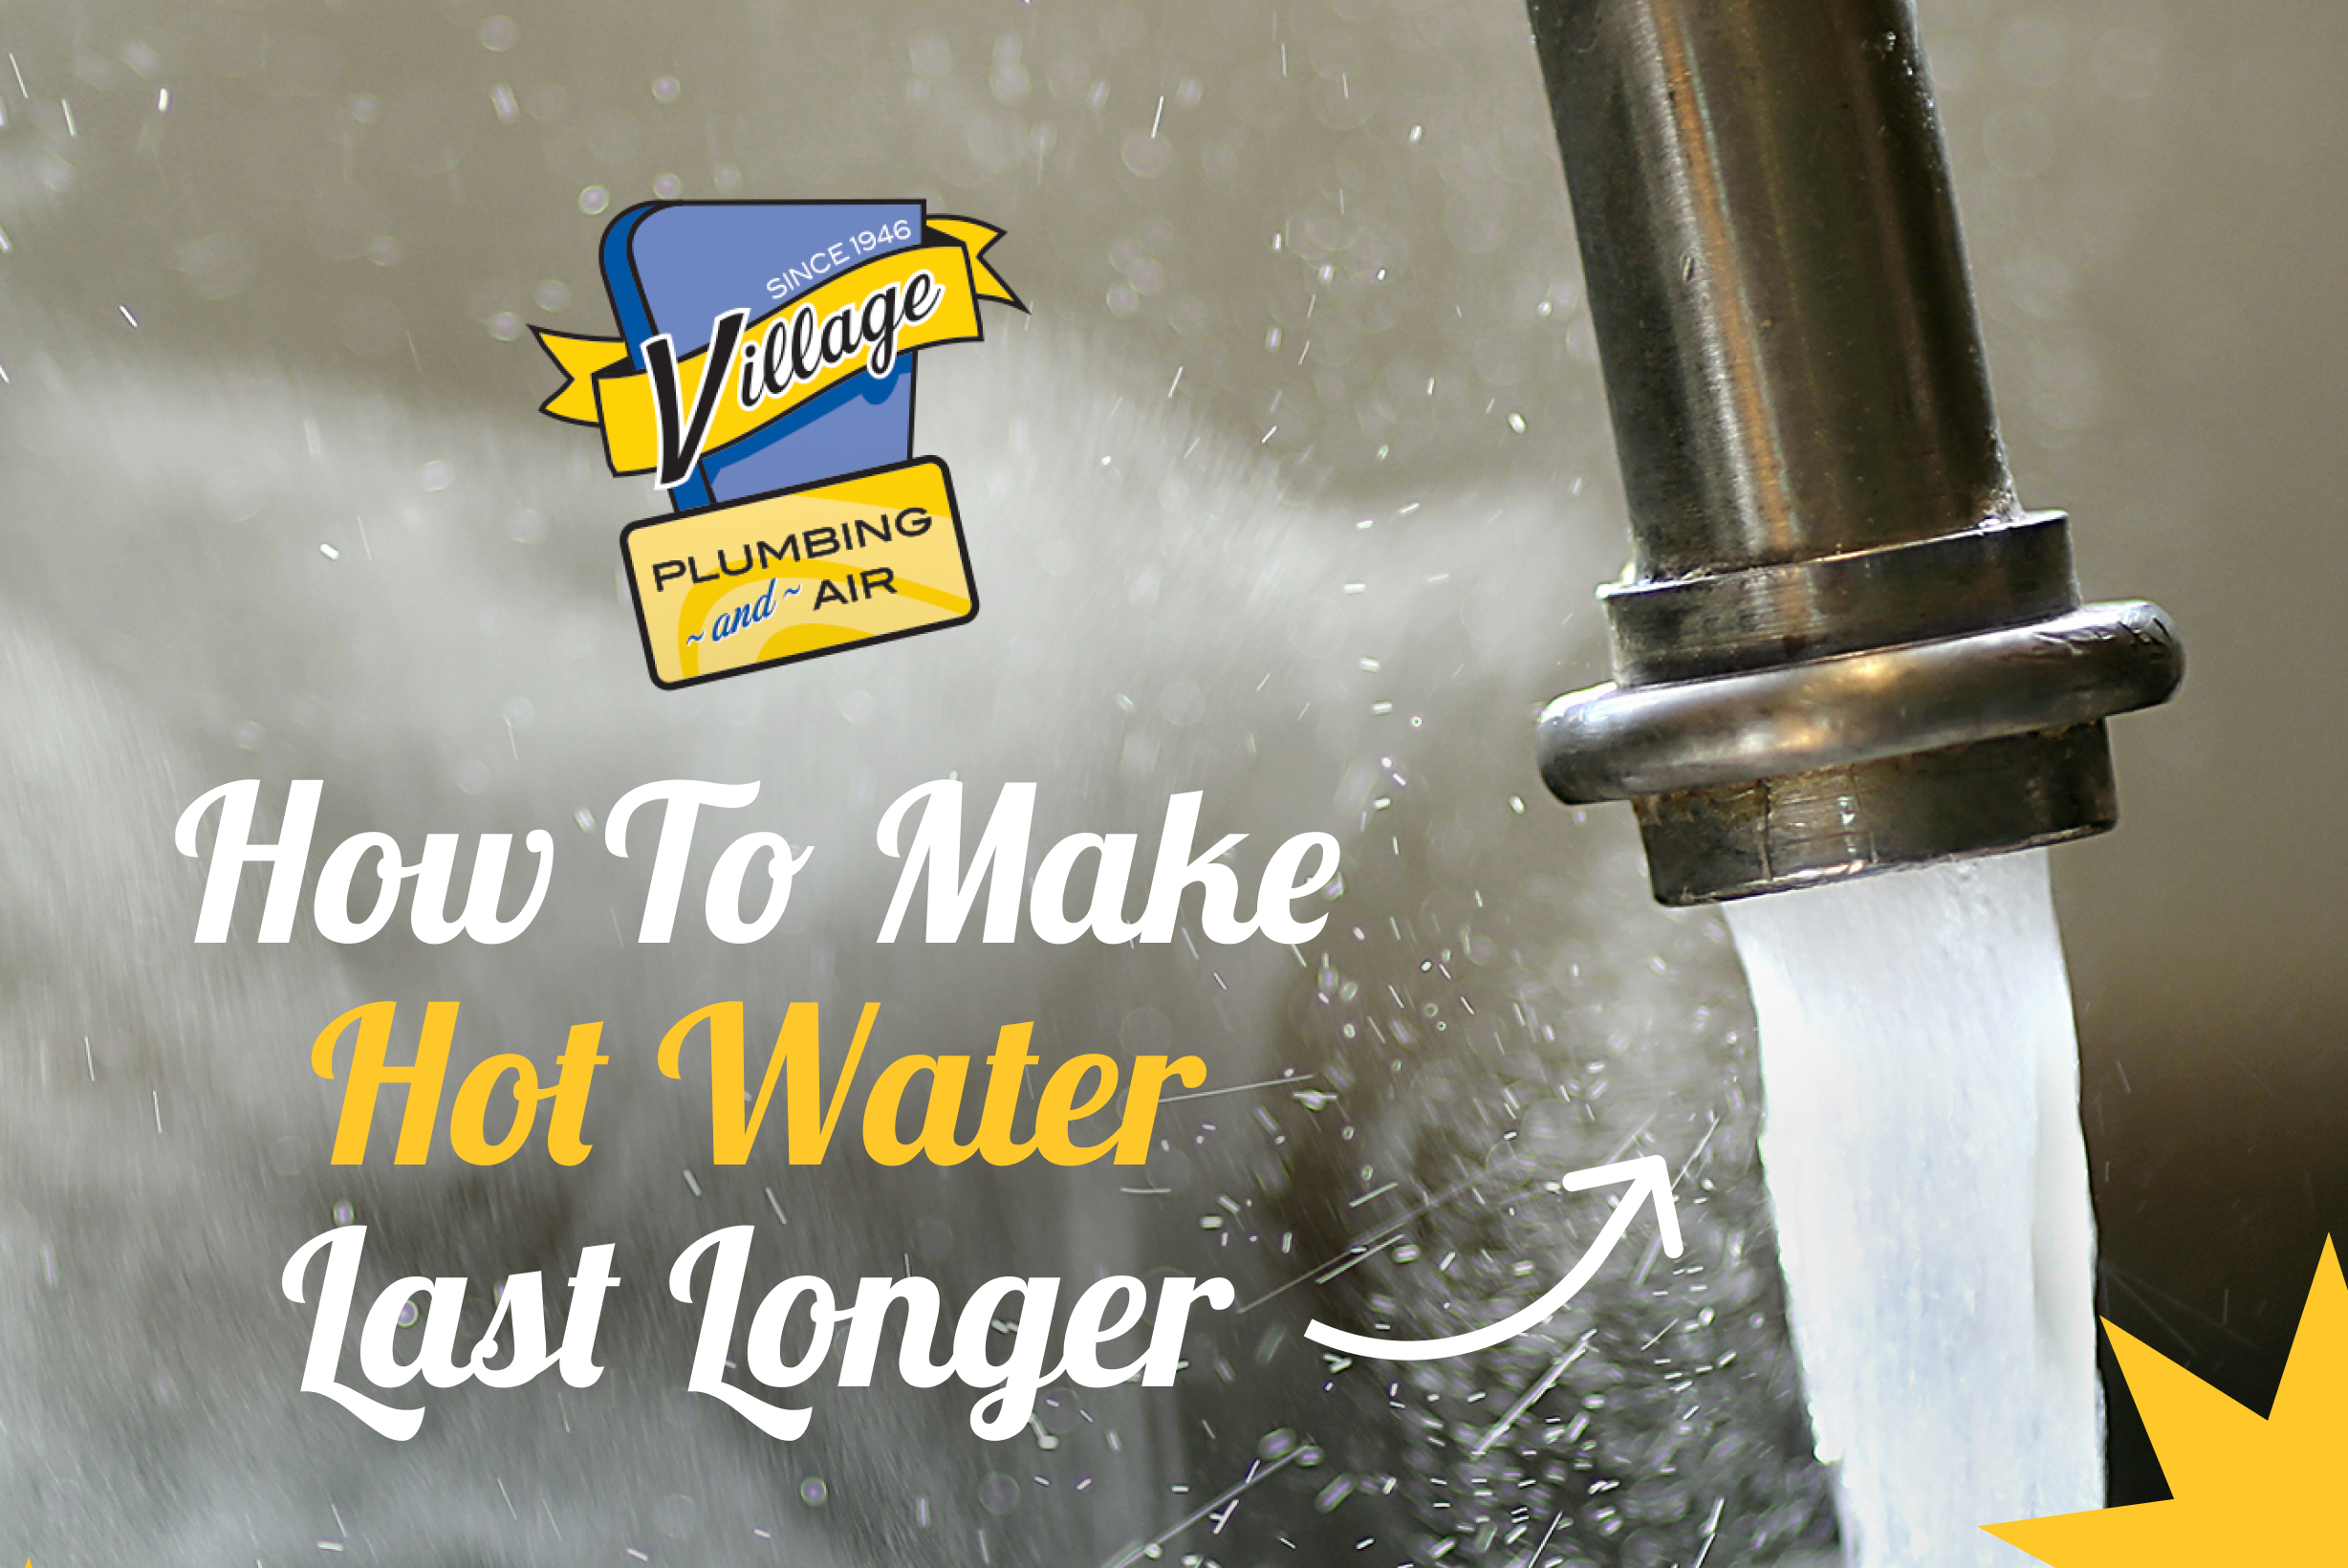 https://villageplumbing.com/wp-content/uploads/2023/03/Village-Plumbing-How-to-Make-Hot-Water-Last-Longer.png